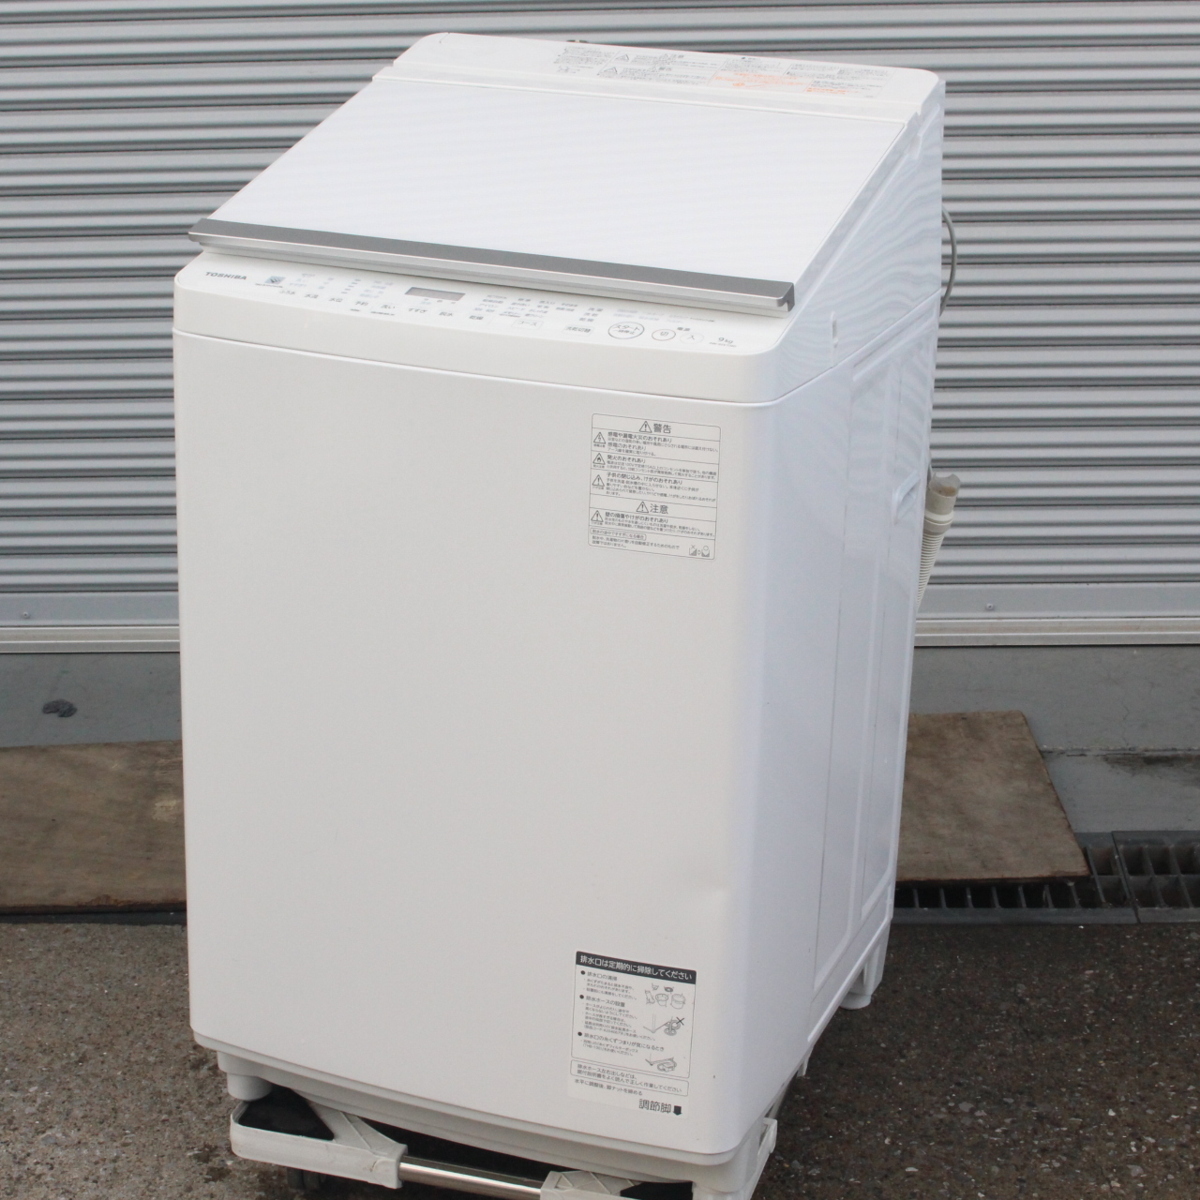 東京都江東区にて 東芝 全自動洗濯機 AW-9SV7 2019年製 を出張買取させて頂きました。